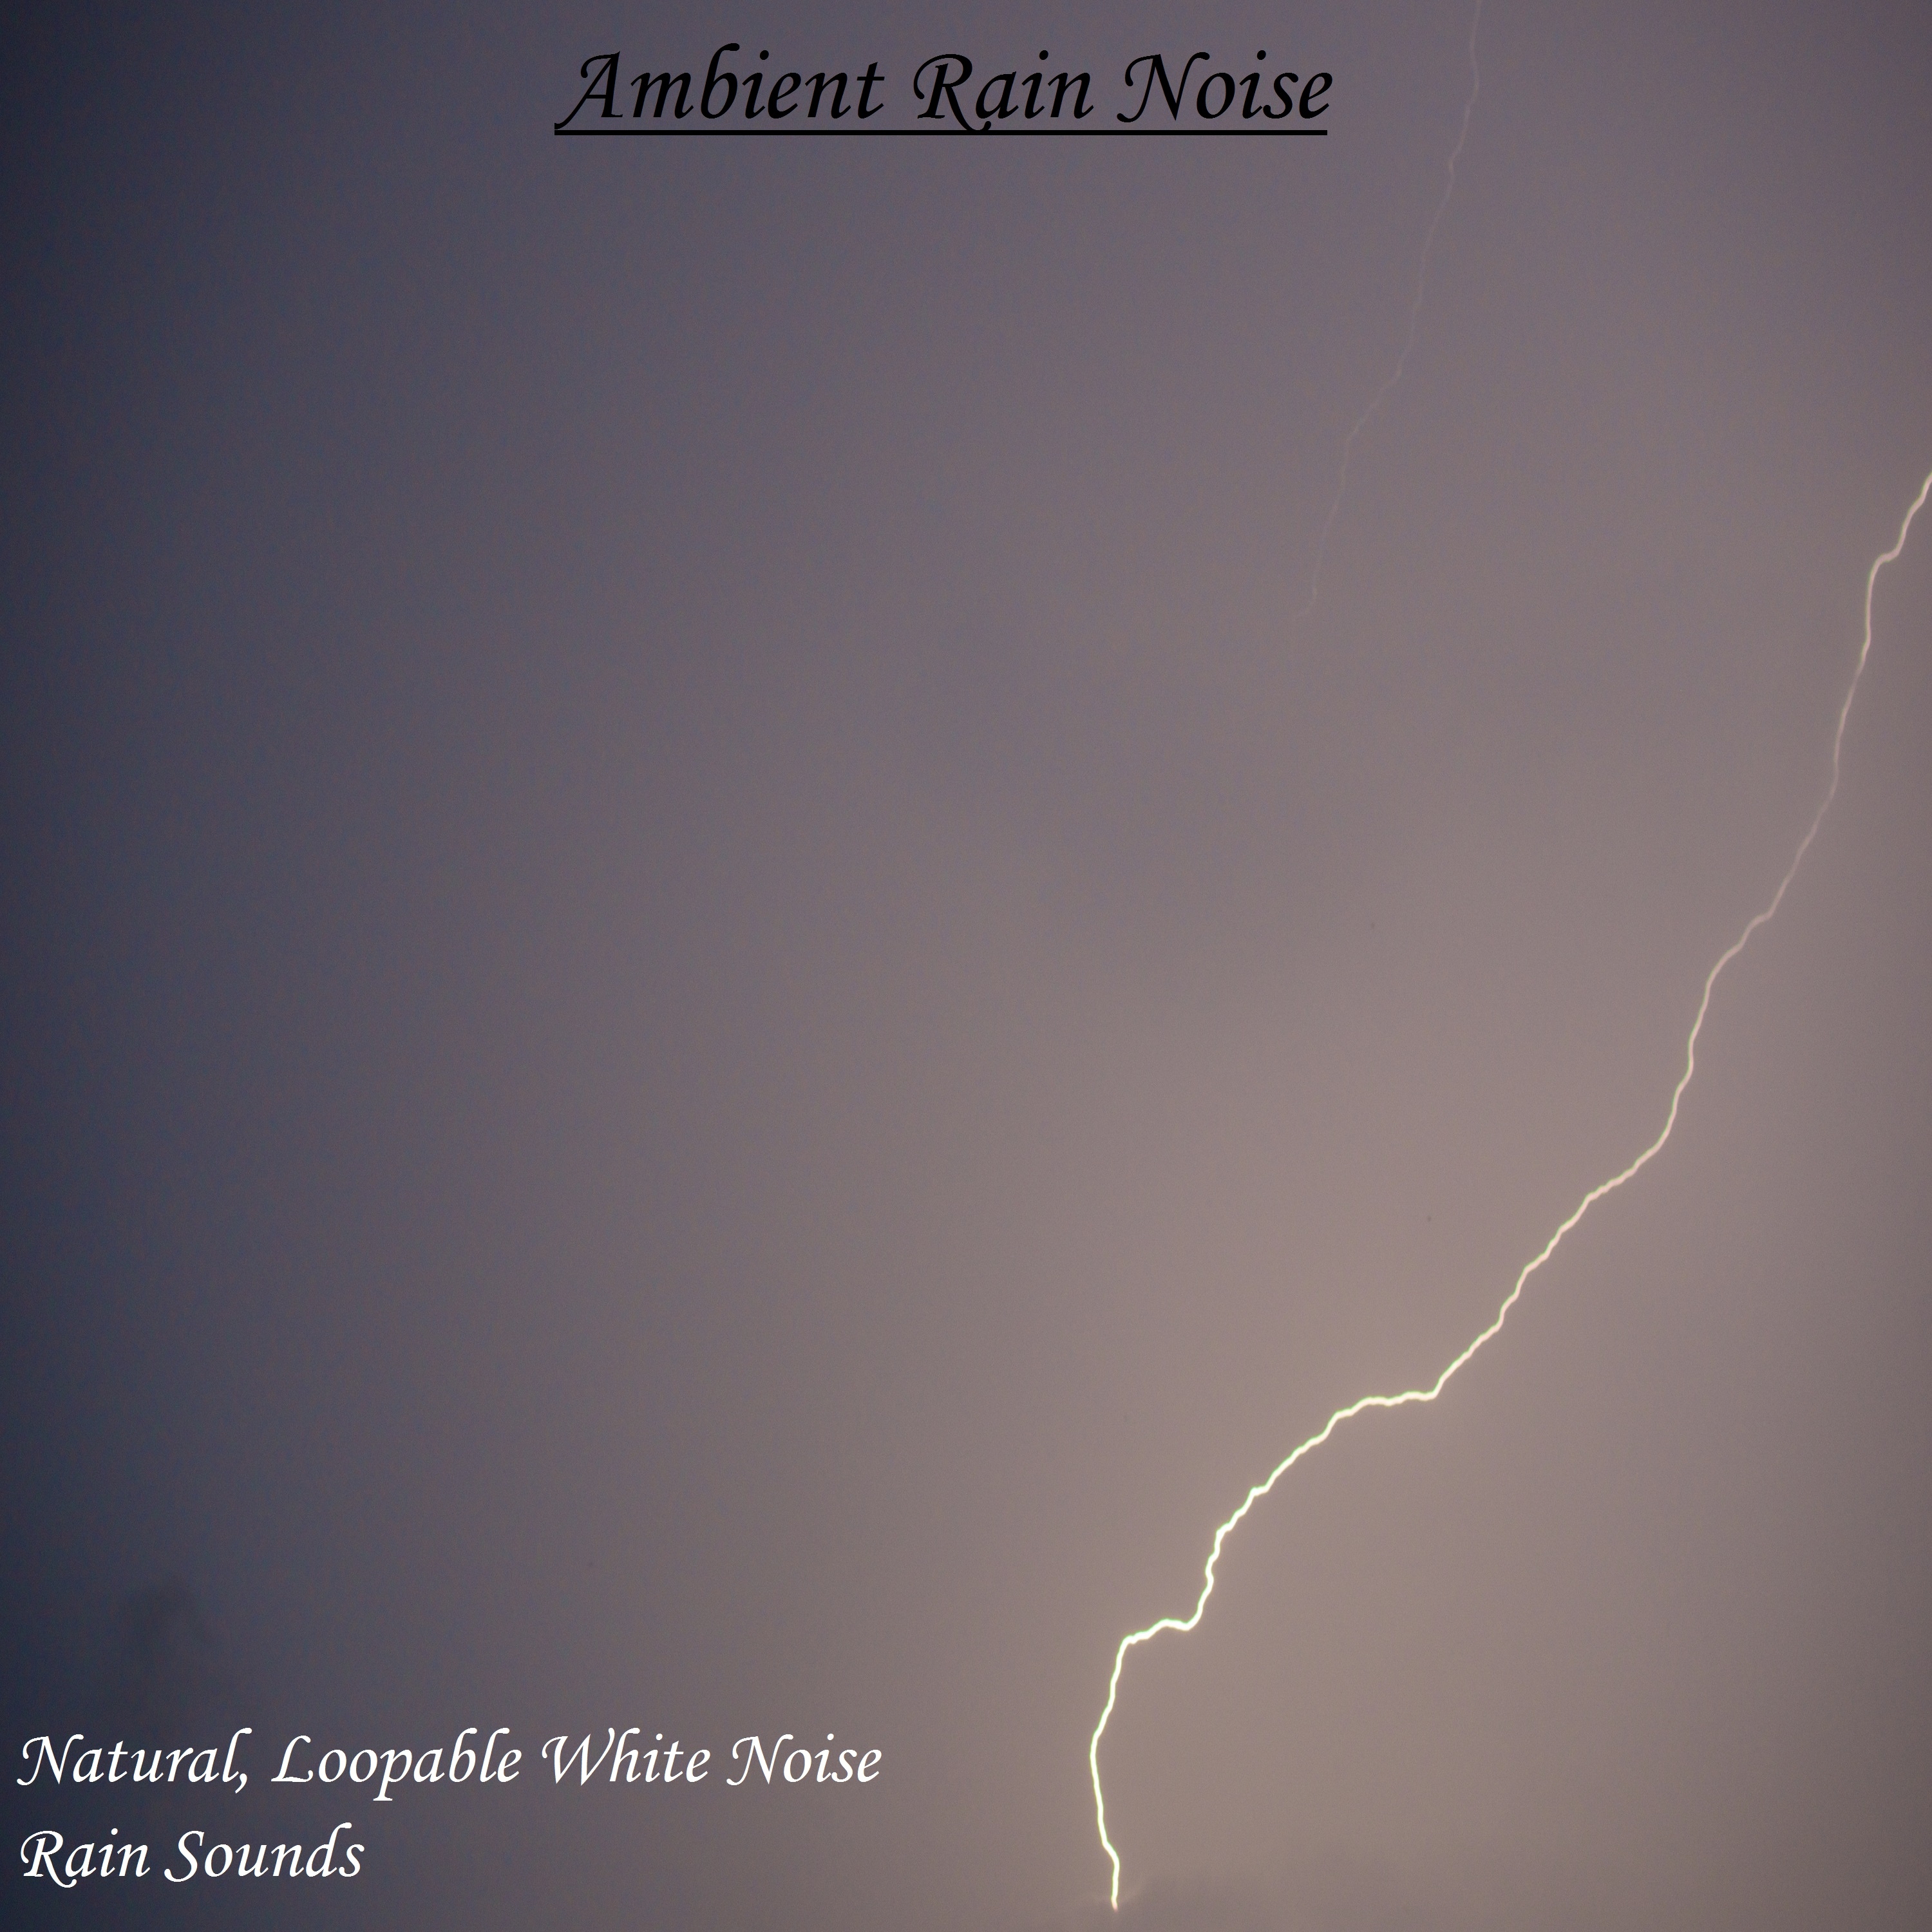 Ambient Rain Noise - Natural, Loopable White Noise Rain Sounds